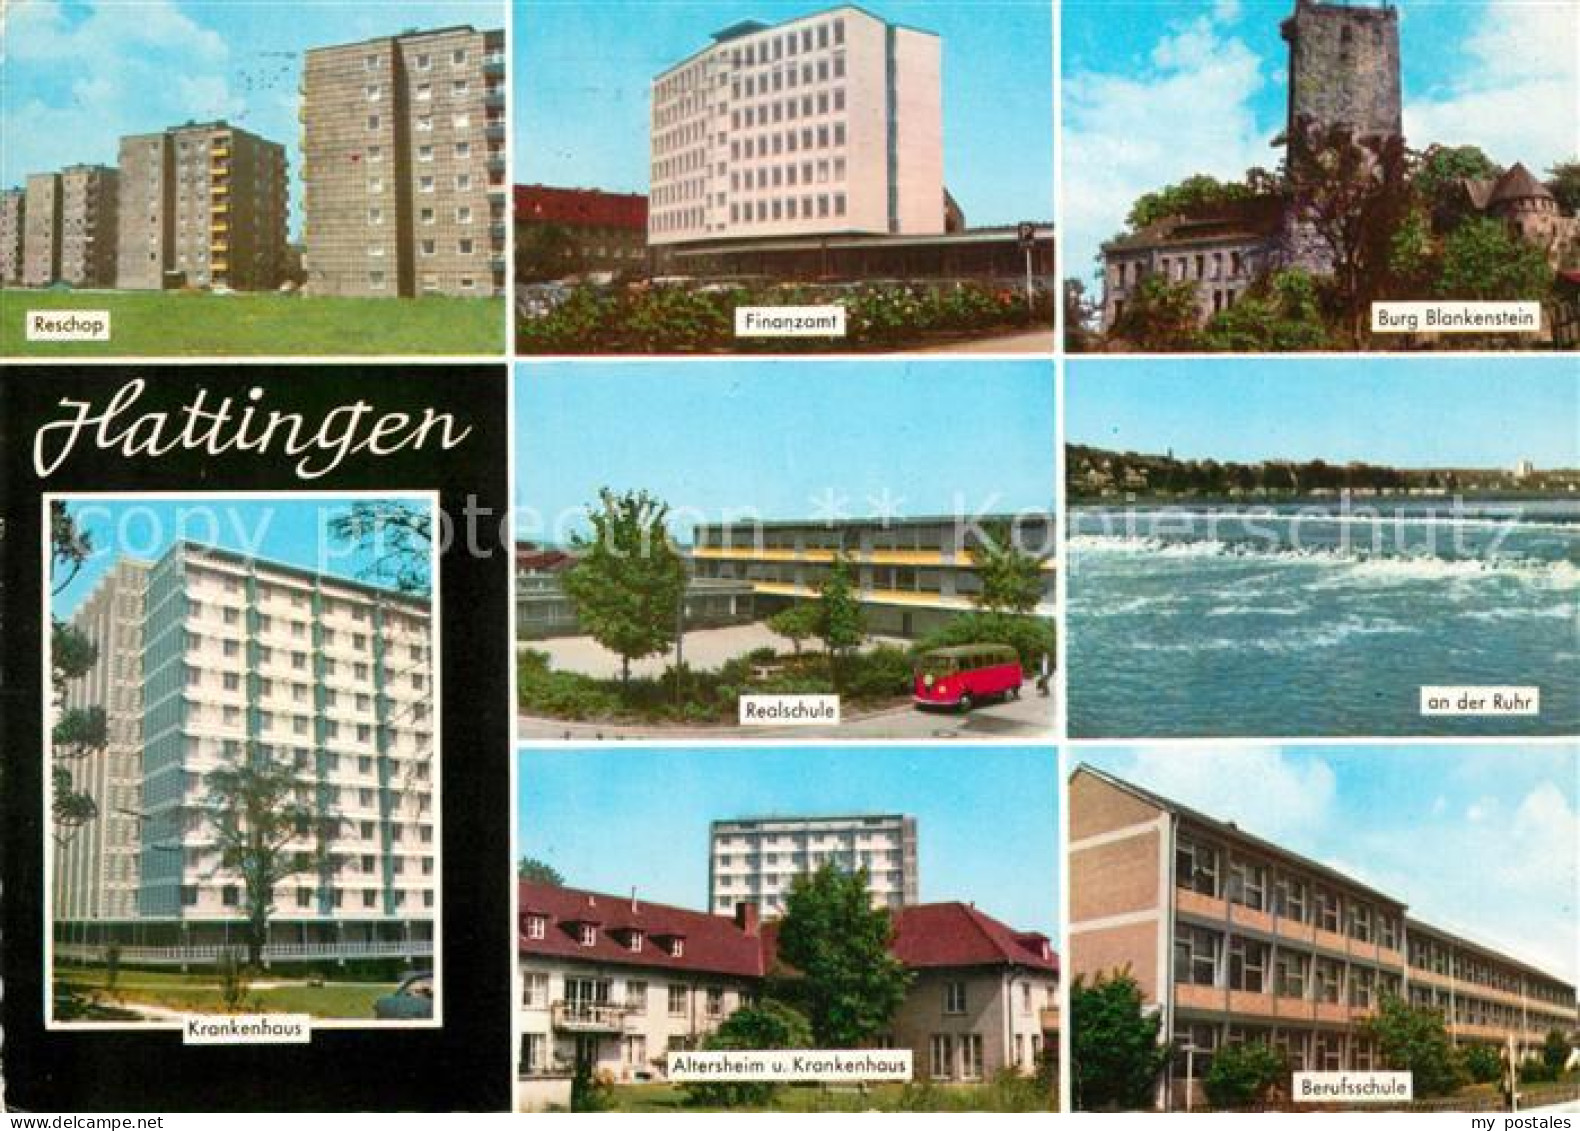 73068545 Hattingen Ruhr Burg Blankenstein Reschop Finanzamt Hattingen Ruhr - Hattingen